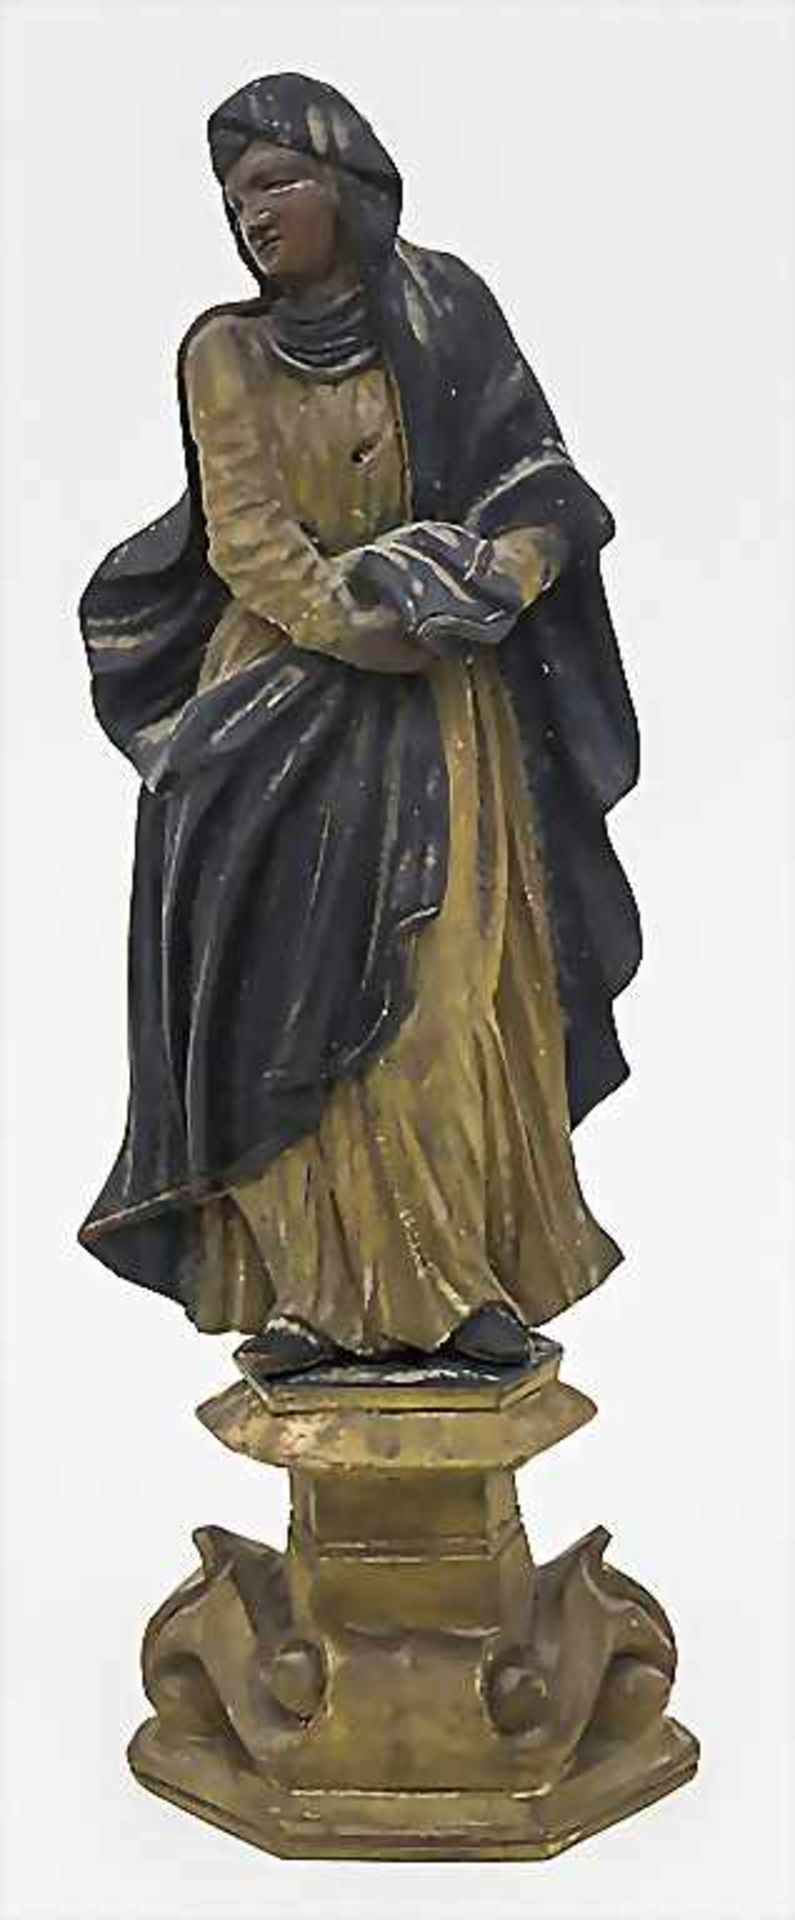 Konsolenfigur 'Maria' / A console figure 'Maria', 19. Jh. Technik: Holz, geschnitzt, farbig gefasst,